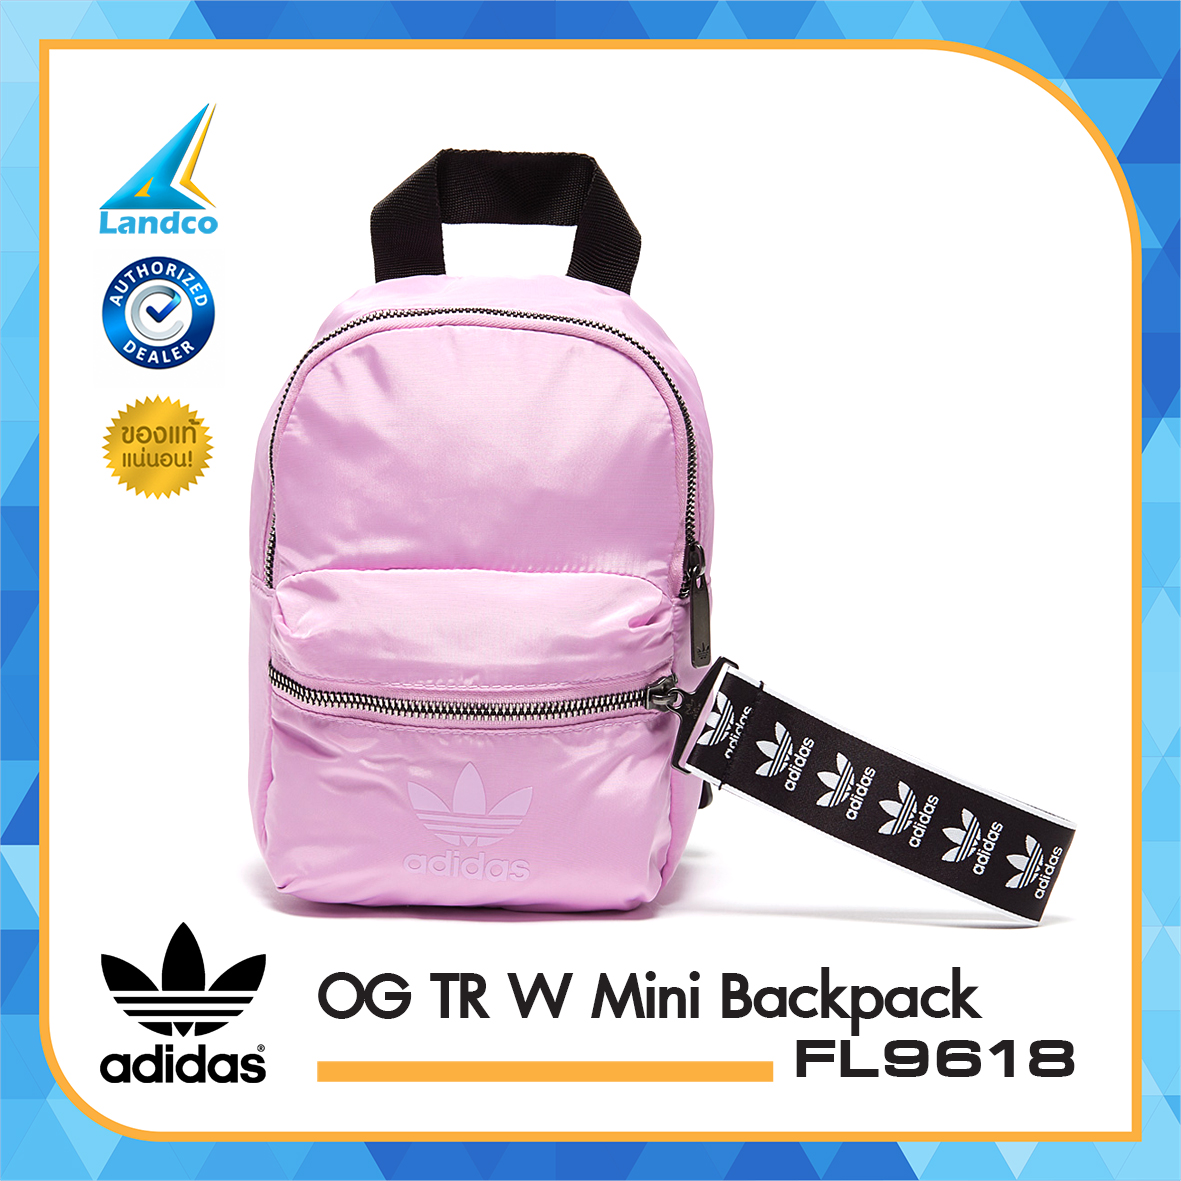 Adidas กระเป๋าเป้ กระเป๋าแฟชั่น กระเป๋ามินิ อาดิดาส OG TR W MiniBackpack FL9618 PP(1200)T